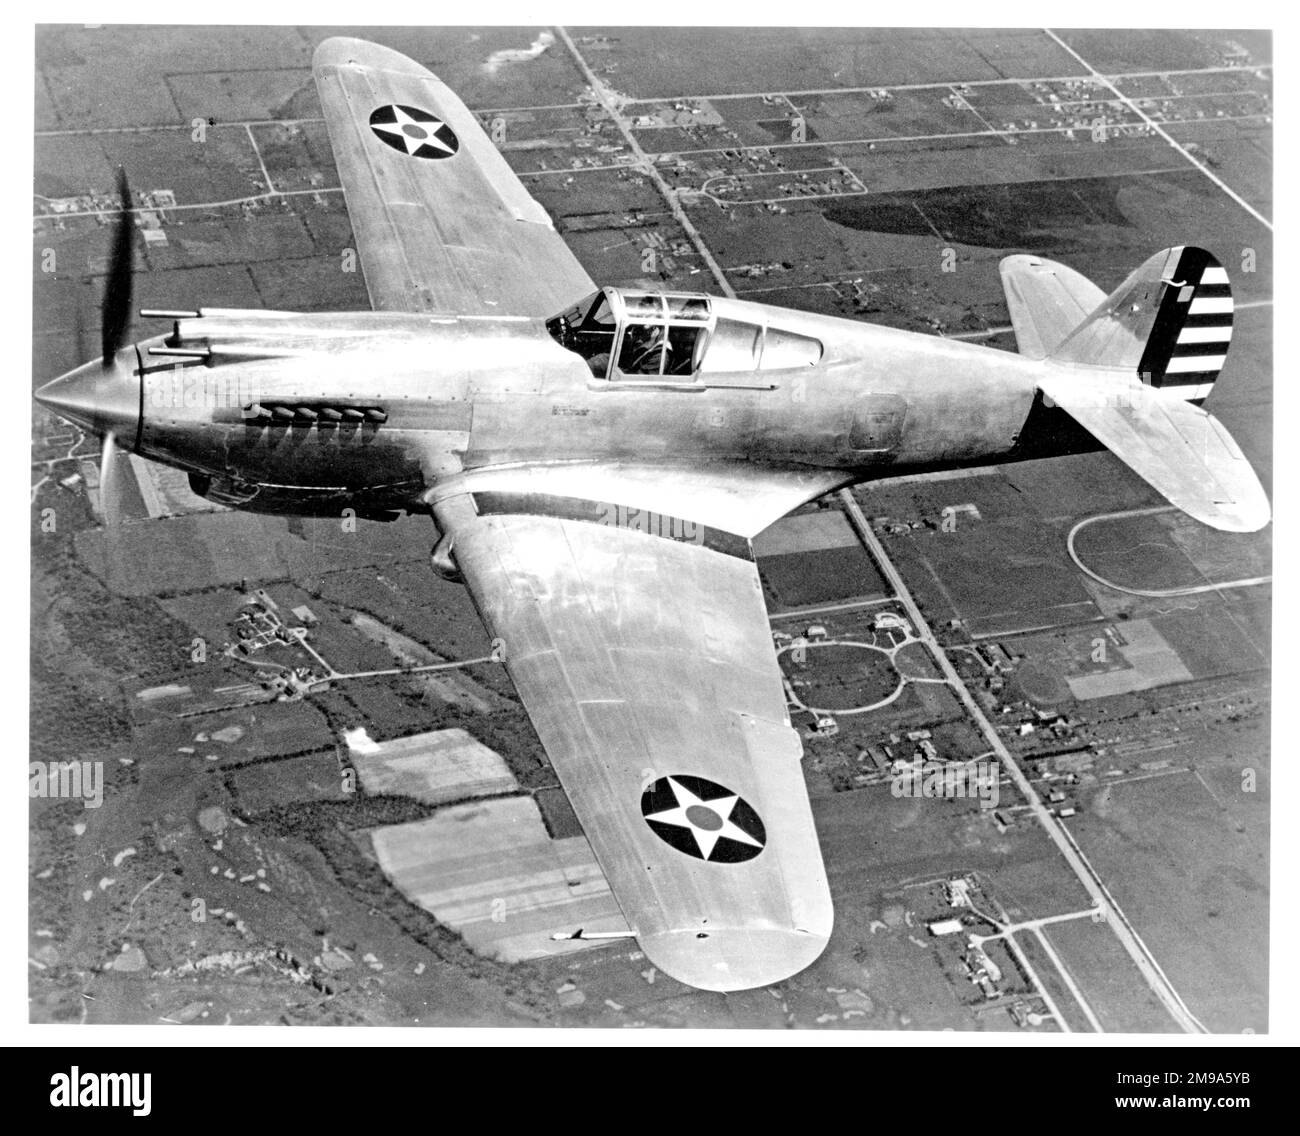 United States Army Air Corps (USAAC) - Curtiss P-40 (modello 81). Il primo standard di produzione, consegnato con le stelle e le strisce su entrambe le ali, insolitamente. Questo potrebbe essere il XP-40 (modello 75P, msn 12424) nella sua terza iterazione come standard di produzione per il P-40 (modello 81). Foto Stock